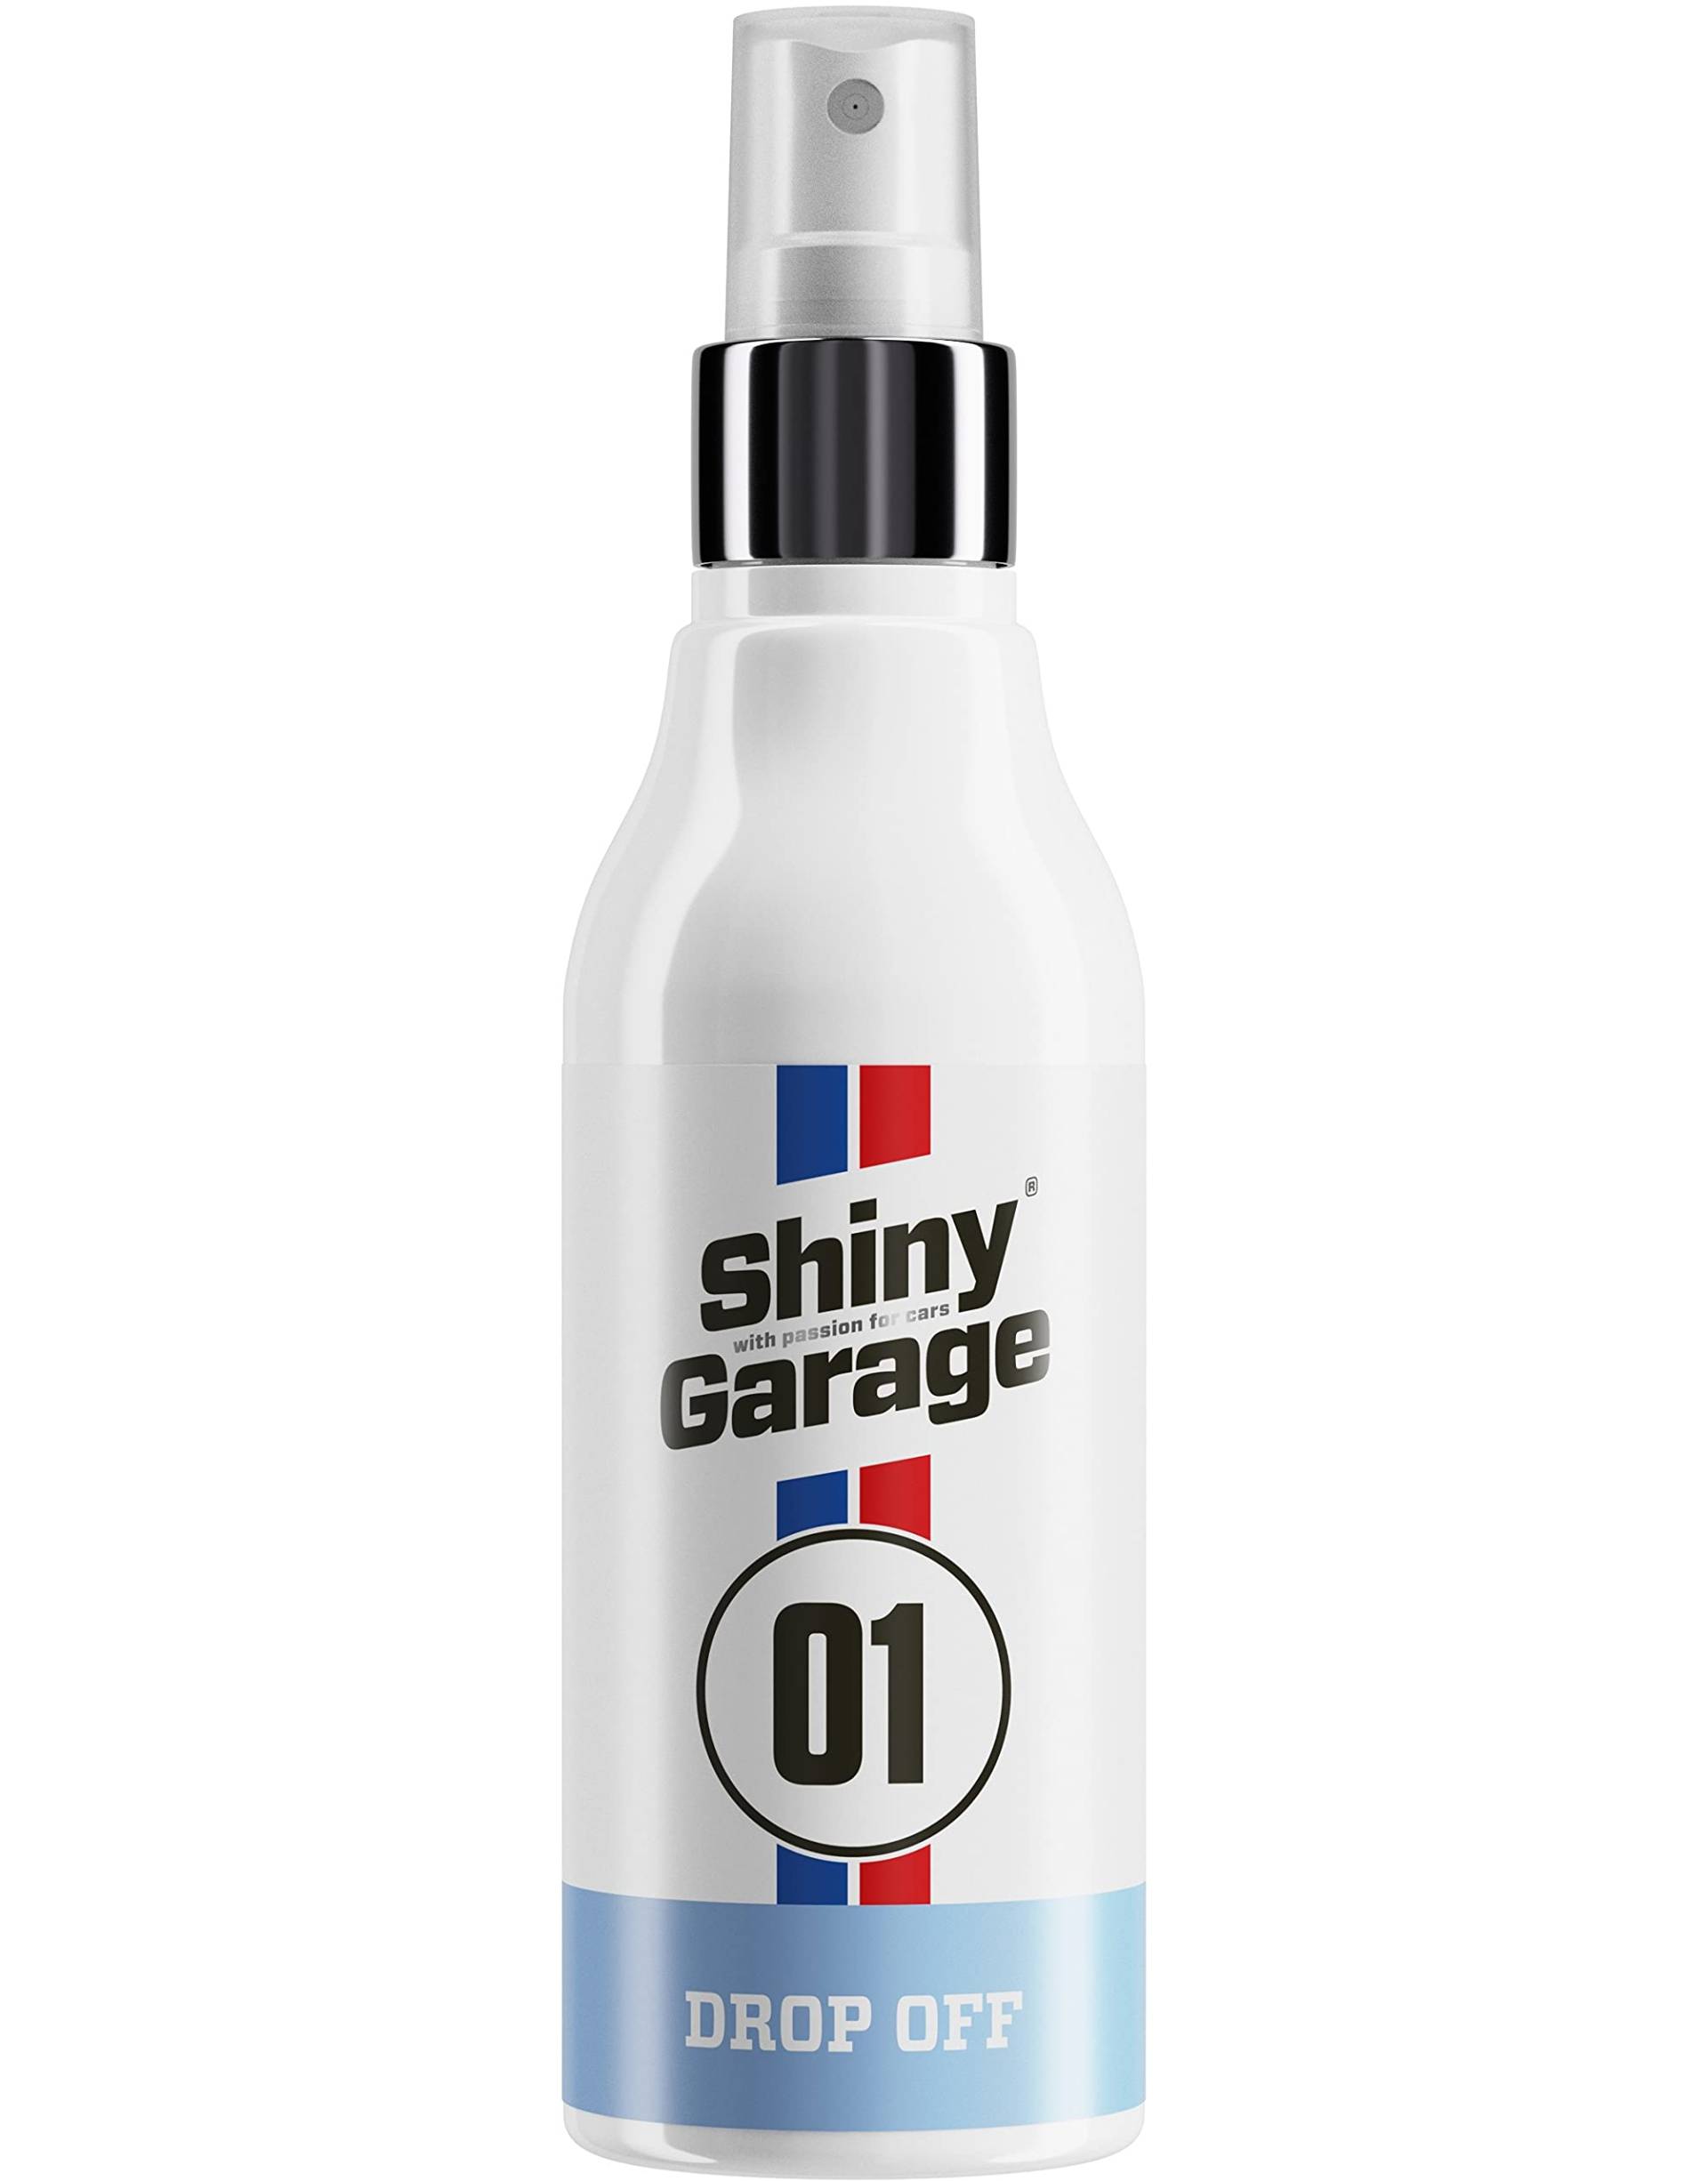 Shiny Garage Scheibenversiegelung Auto 'Drop Off' 150 ml - Autoscheiben Versiegelung mit effektiver Wirkung ab 50 km/h - Regenabweiser Autoscheiben mit starken hydrophoben Eigenschaften von Shiny Garage